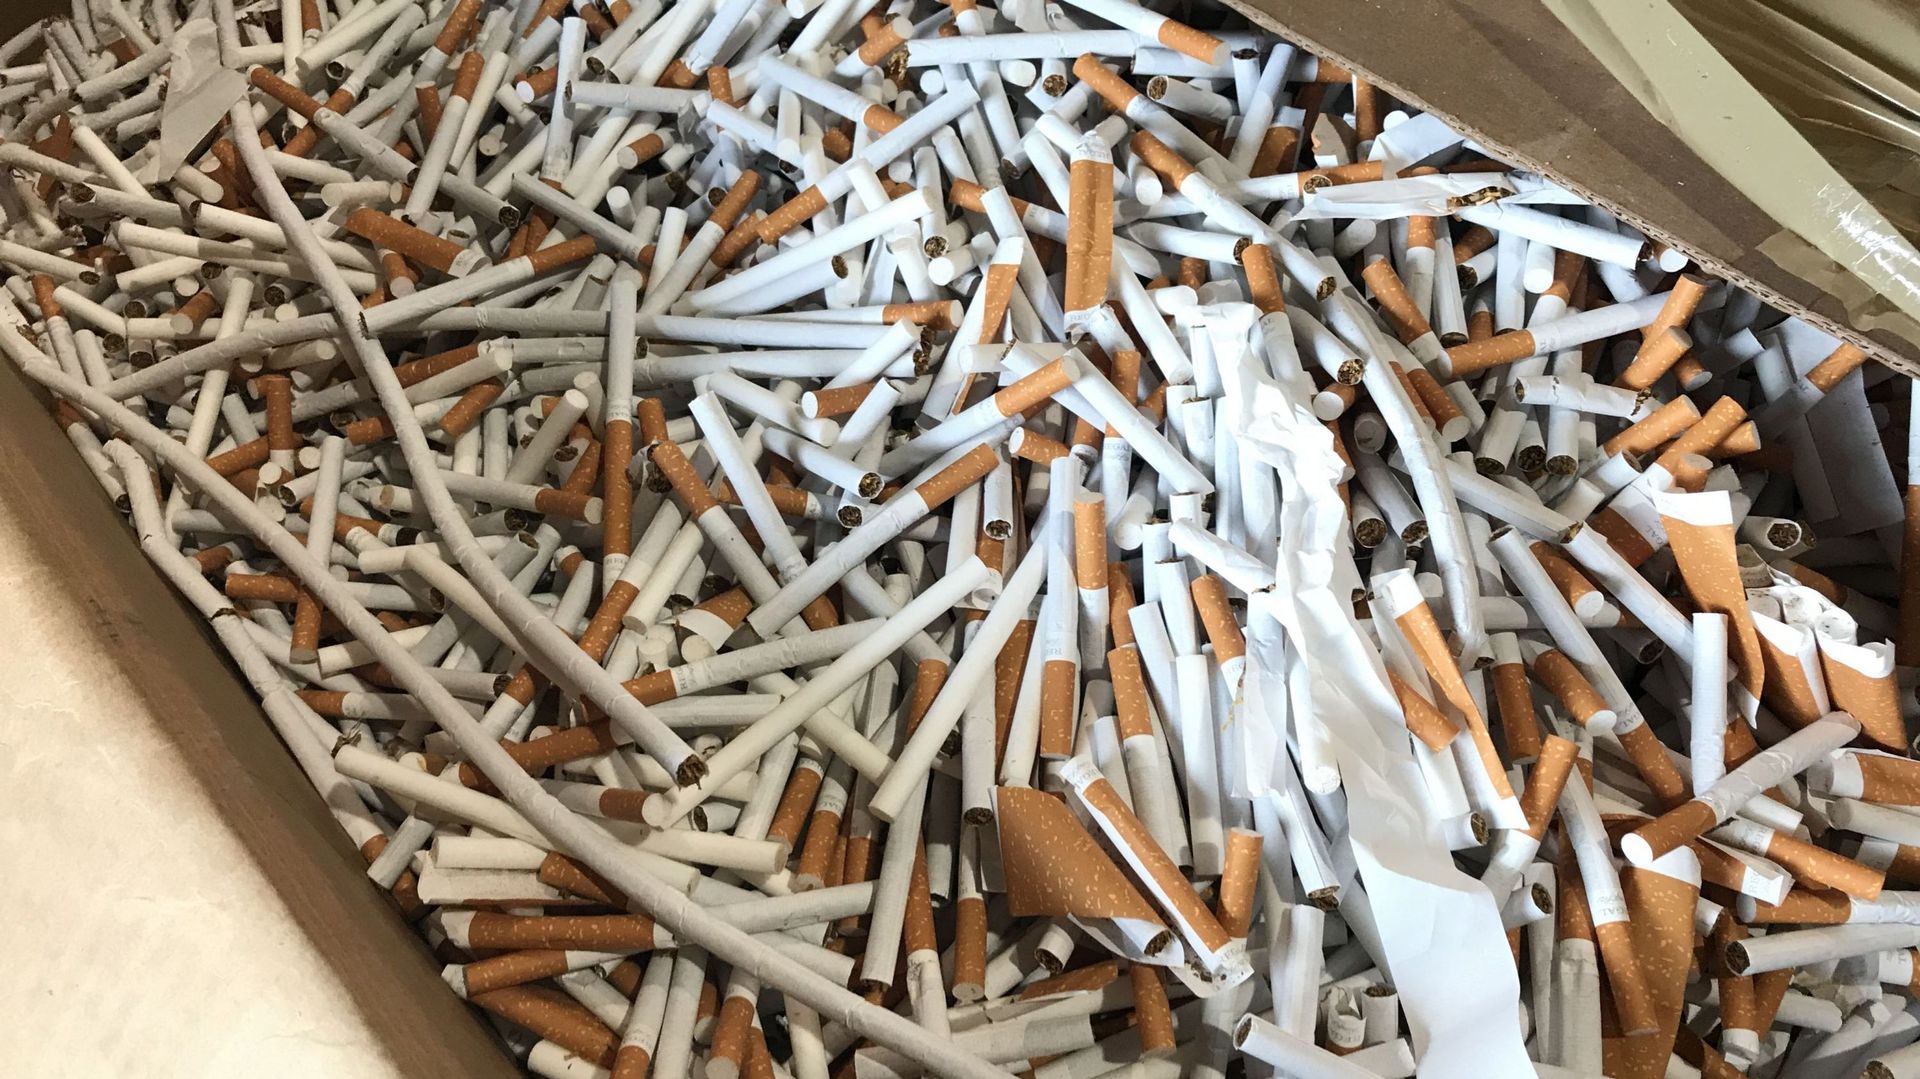 Une usine de cigarettes clandestine découverte à Tamines